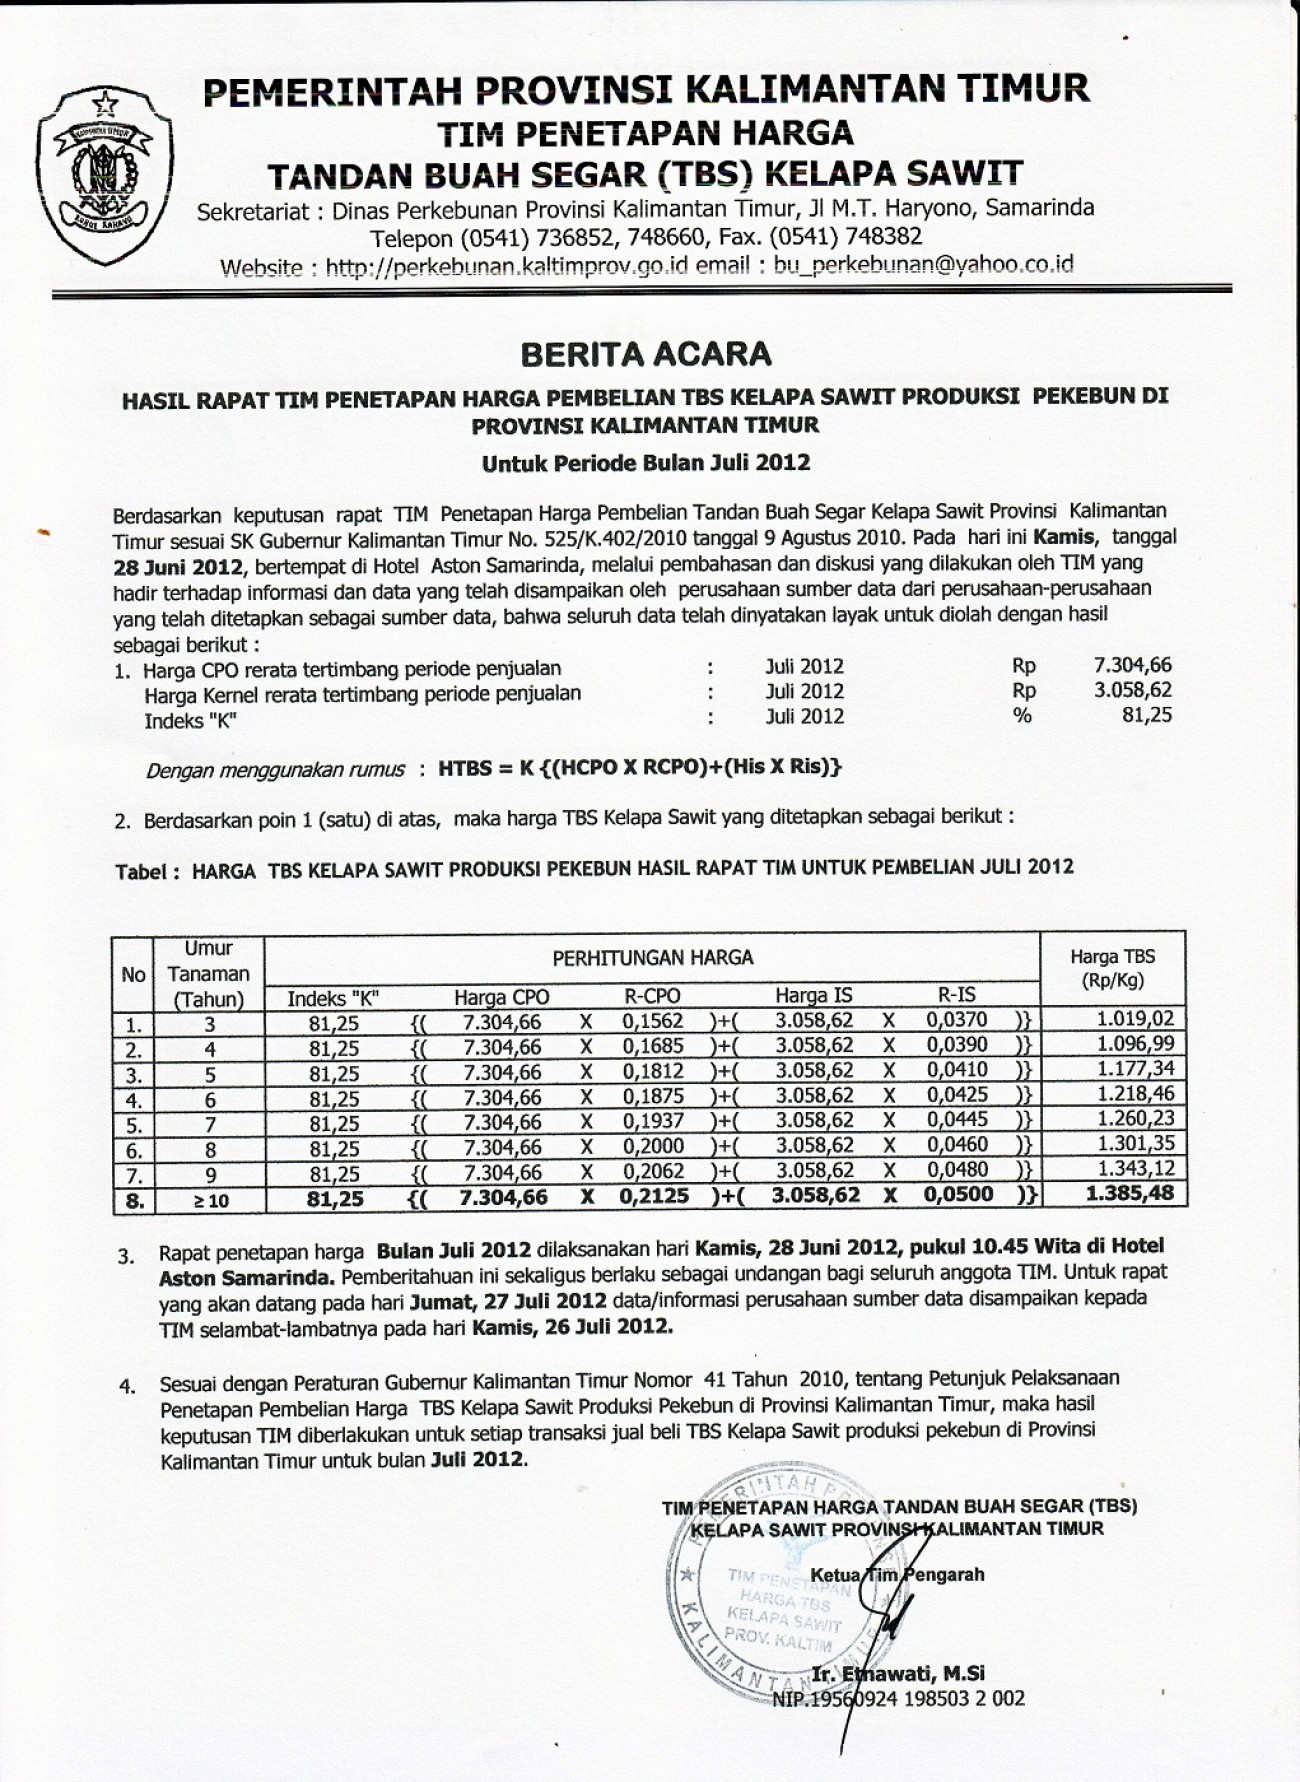 Informasi Harga TBS Kelapa Sawit Untuk Bulan Juli 2012